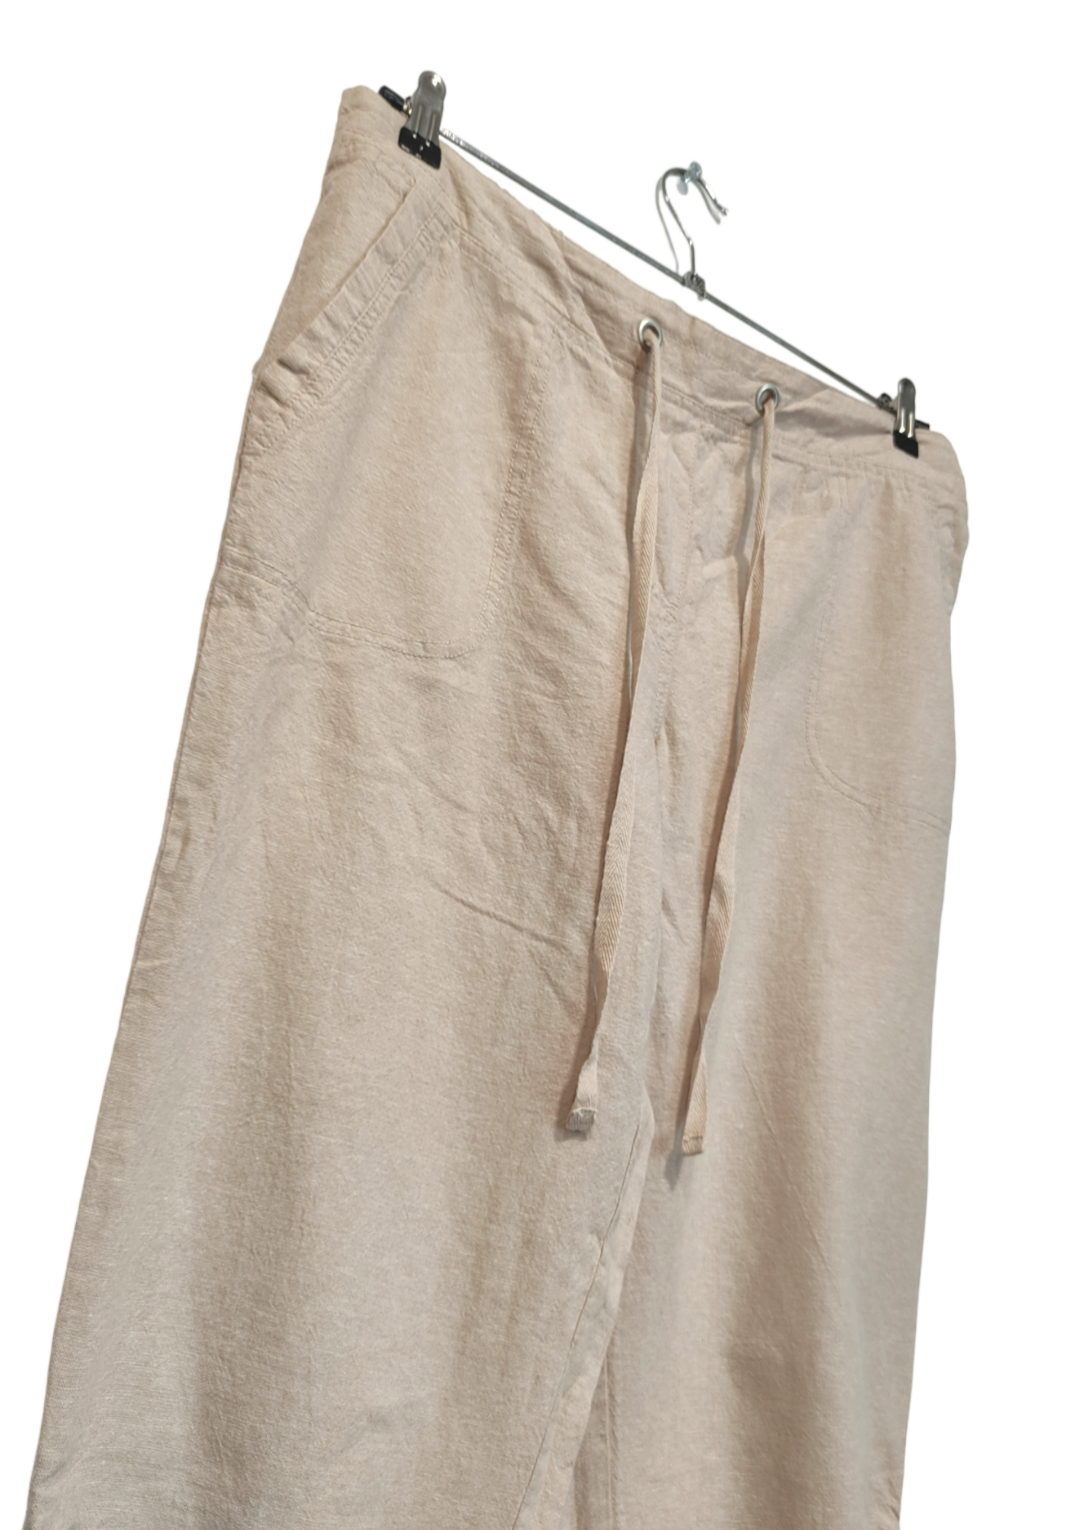 Stock, Γυναικεία Παντελόνα SUZANNE GRAE στο Χρώμα της Άμμου (XL)